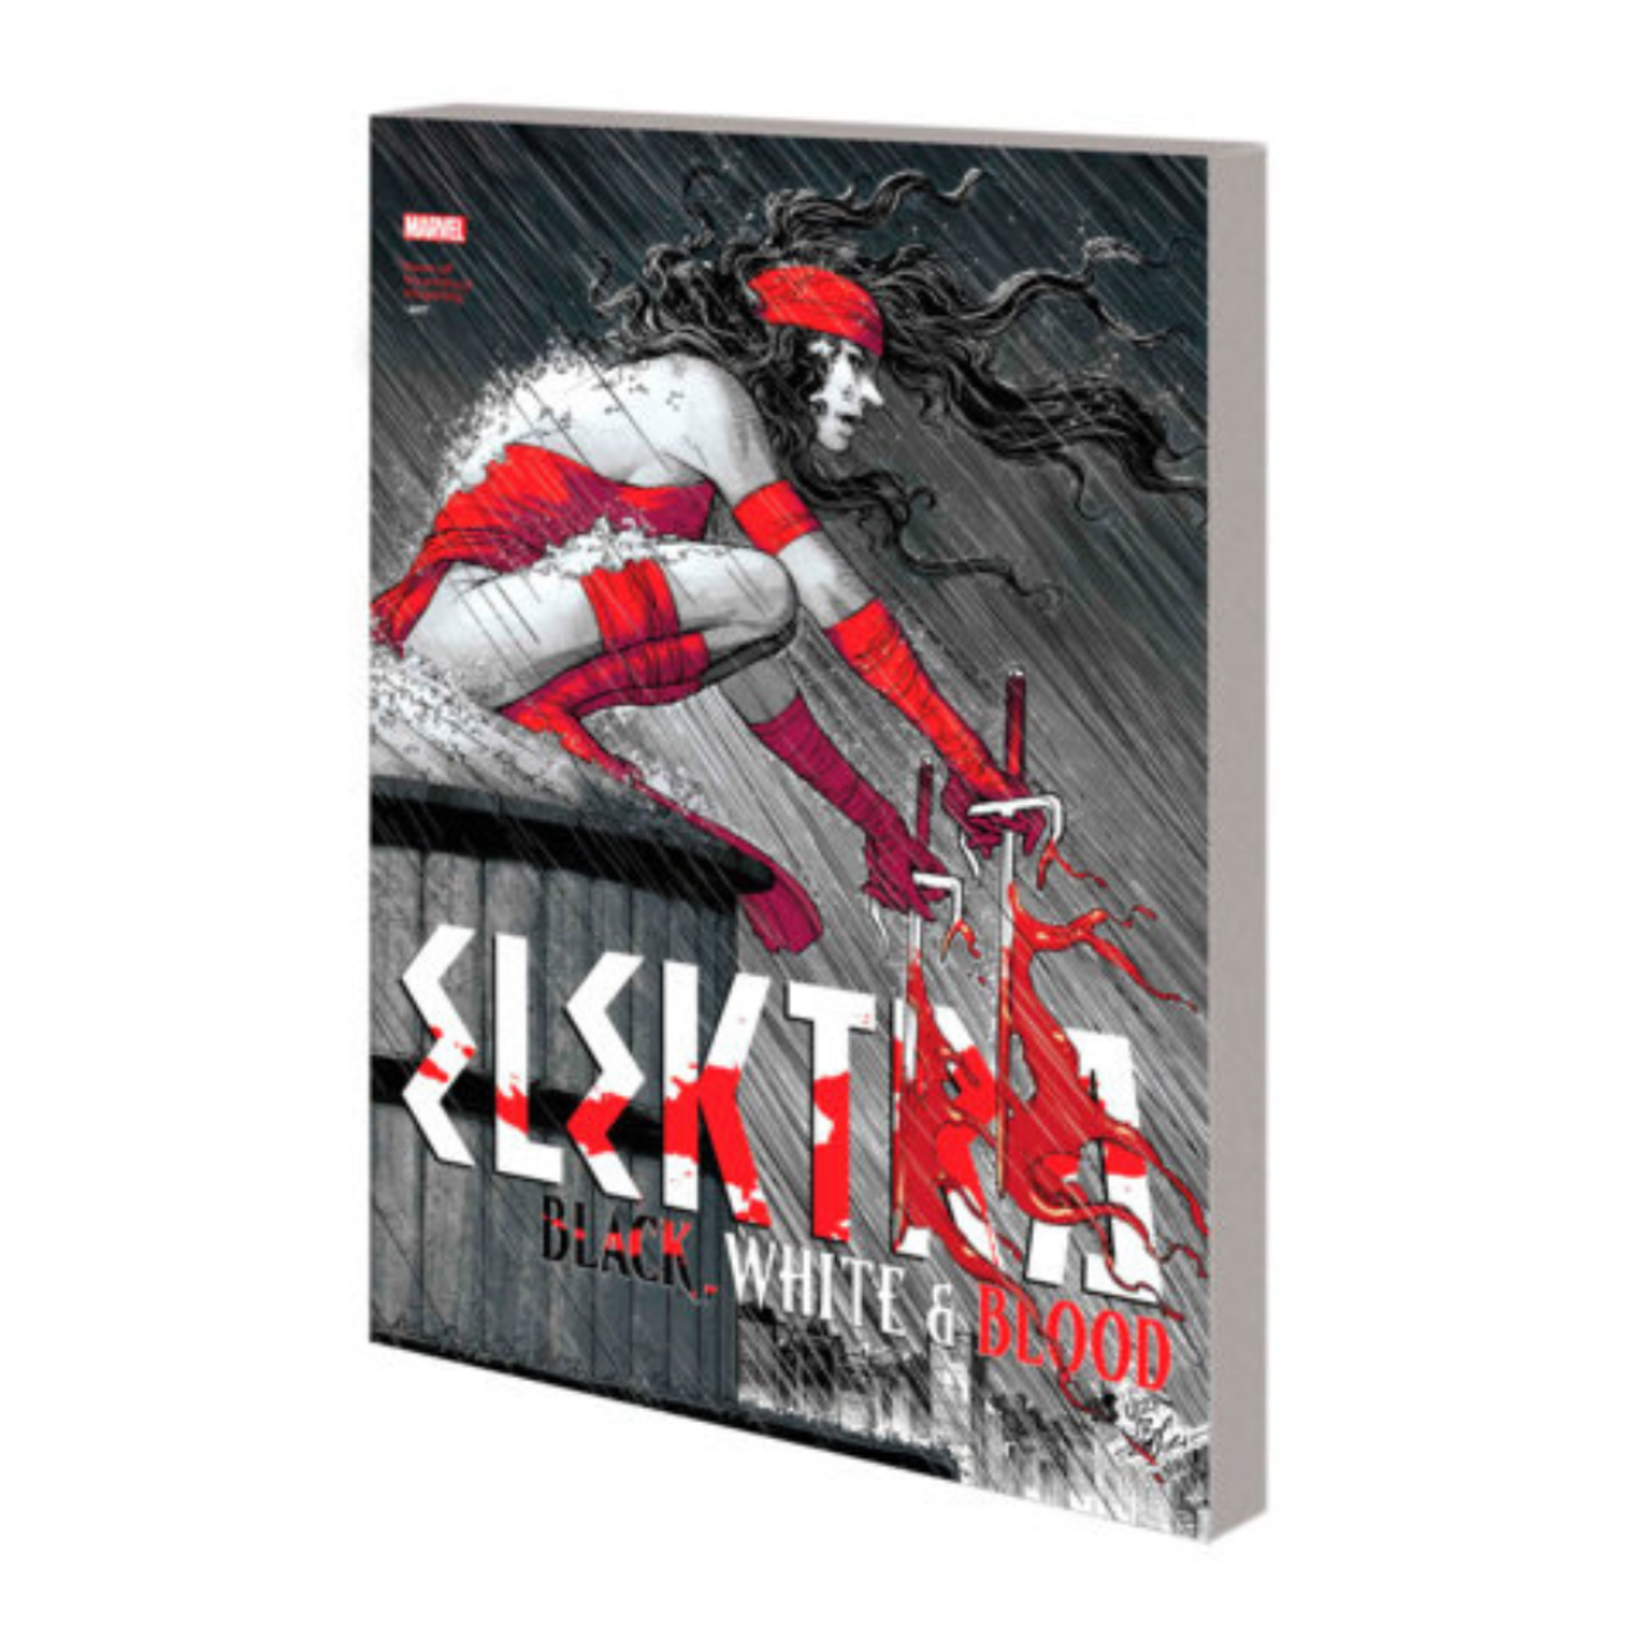 Marvel Comics Elektra Black White & Blood TP